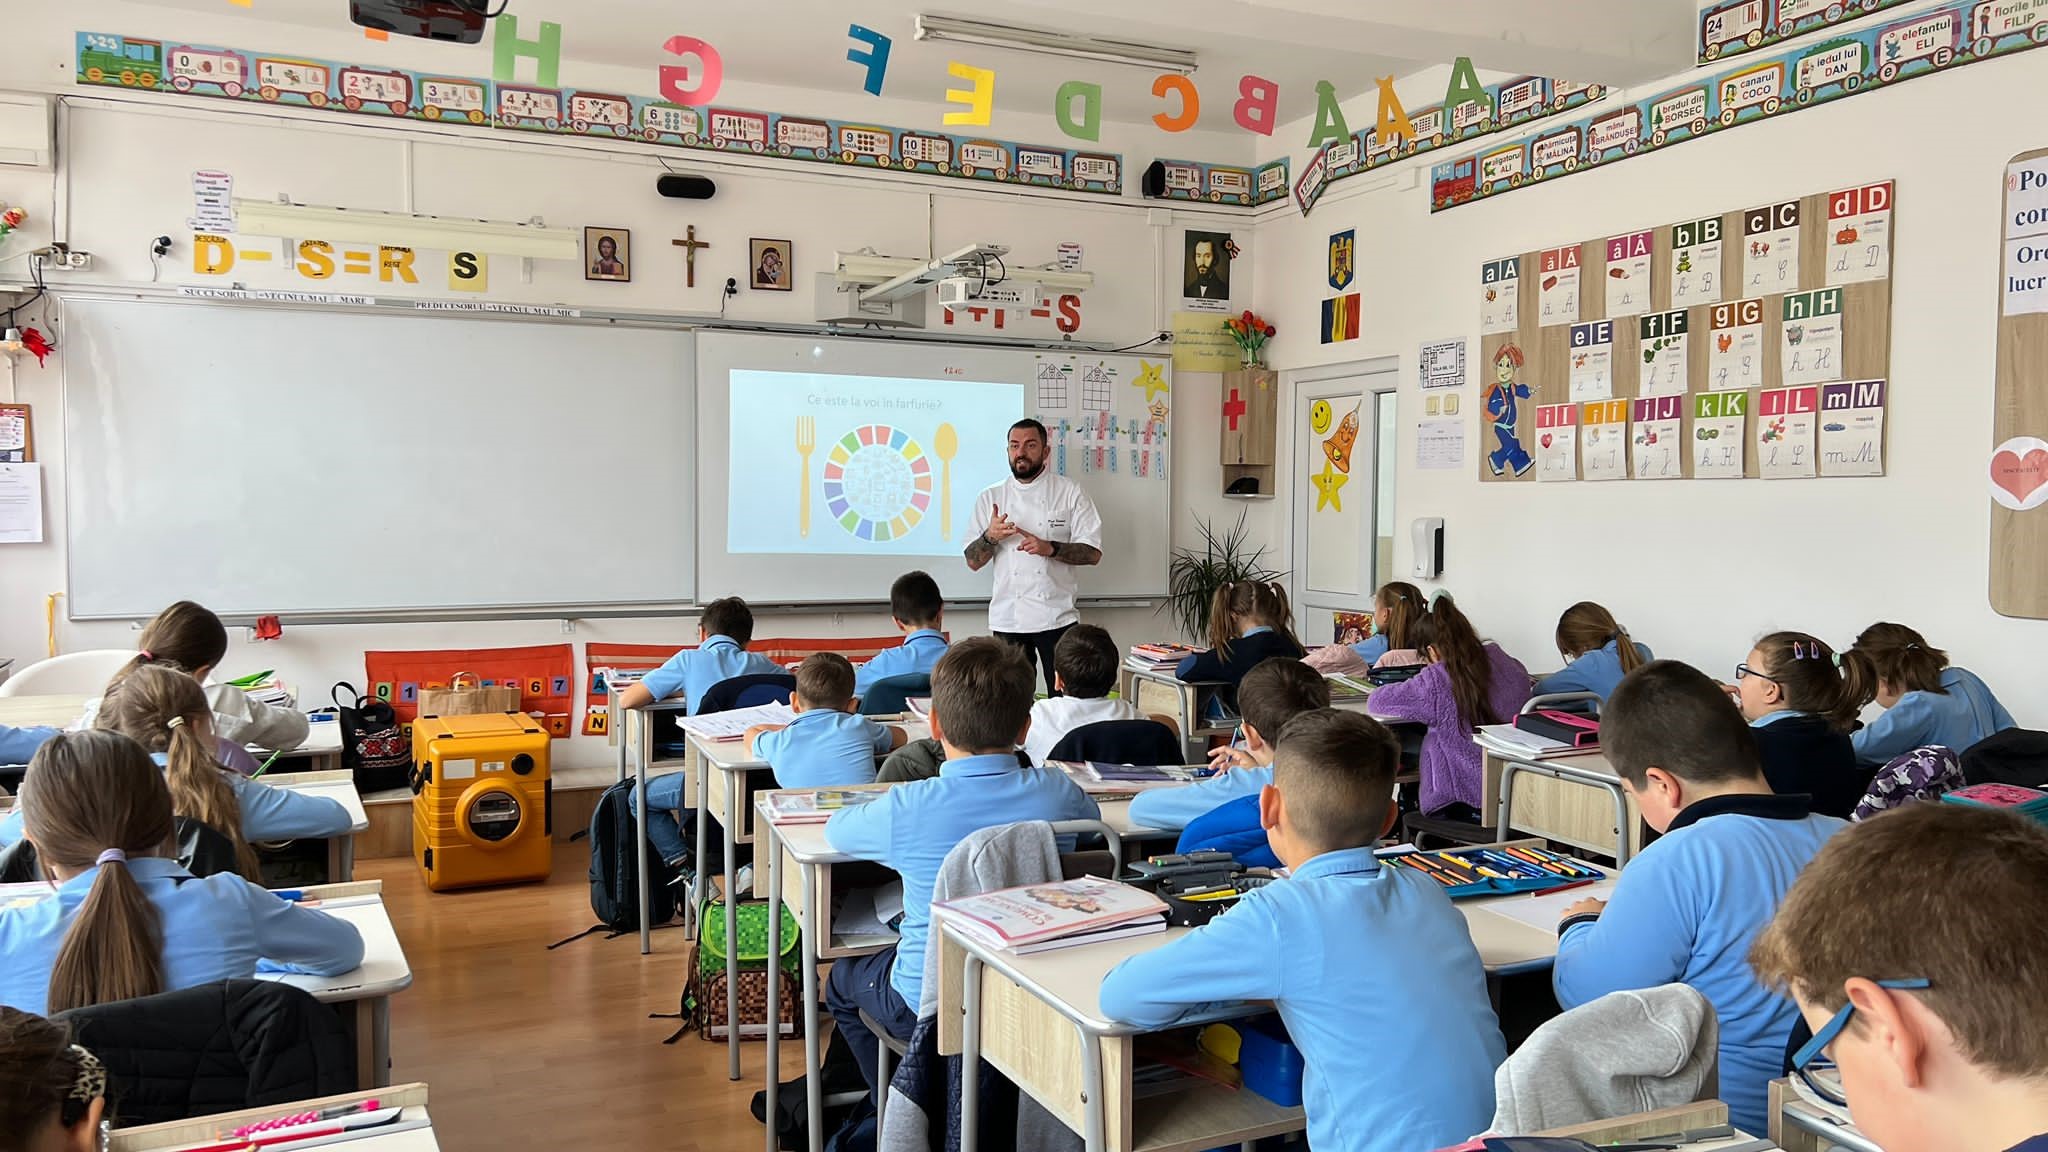 Electrolux continuă demersurile de promovare a educației alimentare sustenabile în școlile din România și pentru al doilea an consecutiv susține împreună cu AIESEC programul Food Heroes   În decursul anului 2022, Electrolux împreună cu AIESEC au desfășura